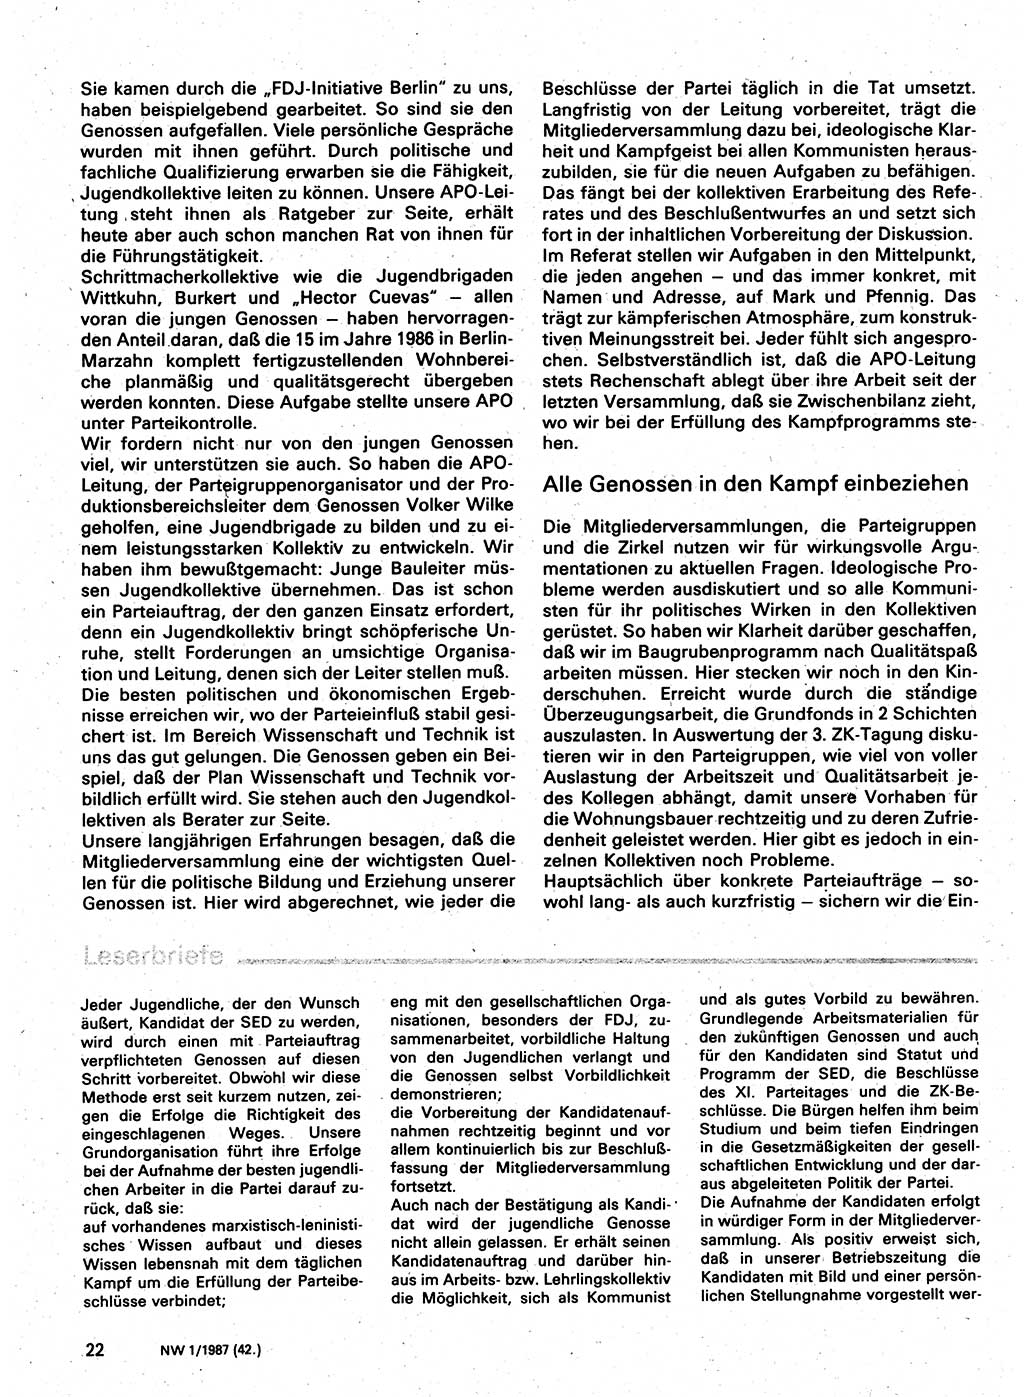 Neuer Weg (NW), Organ des Zentralkomitees (ZK) der SED (Sozialistische Einheitspartei Deutschlands) für Fragen des Parteilebens, 42. Jahrgang [Deutsche Demokratische Republik (DDR)] 1987, Seite 22 (NW ZK SED DDR 1987, S. 22)